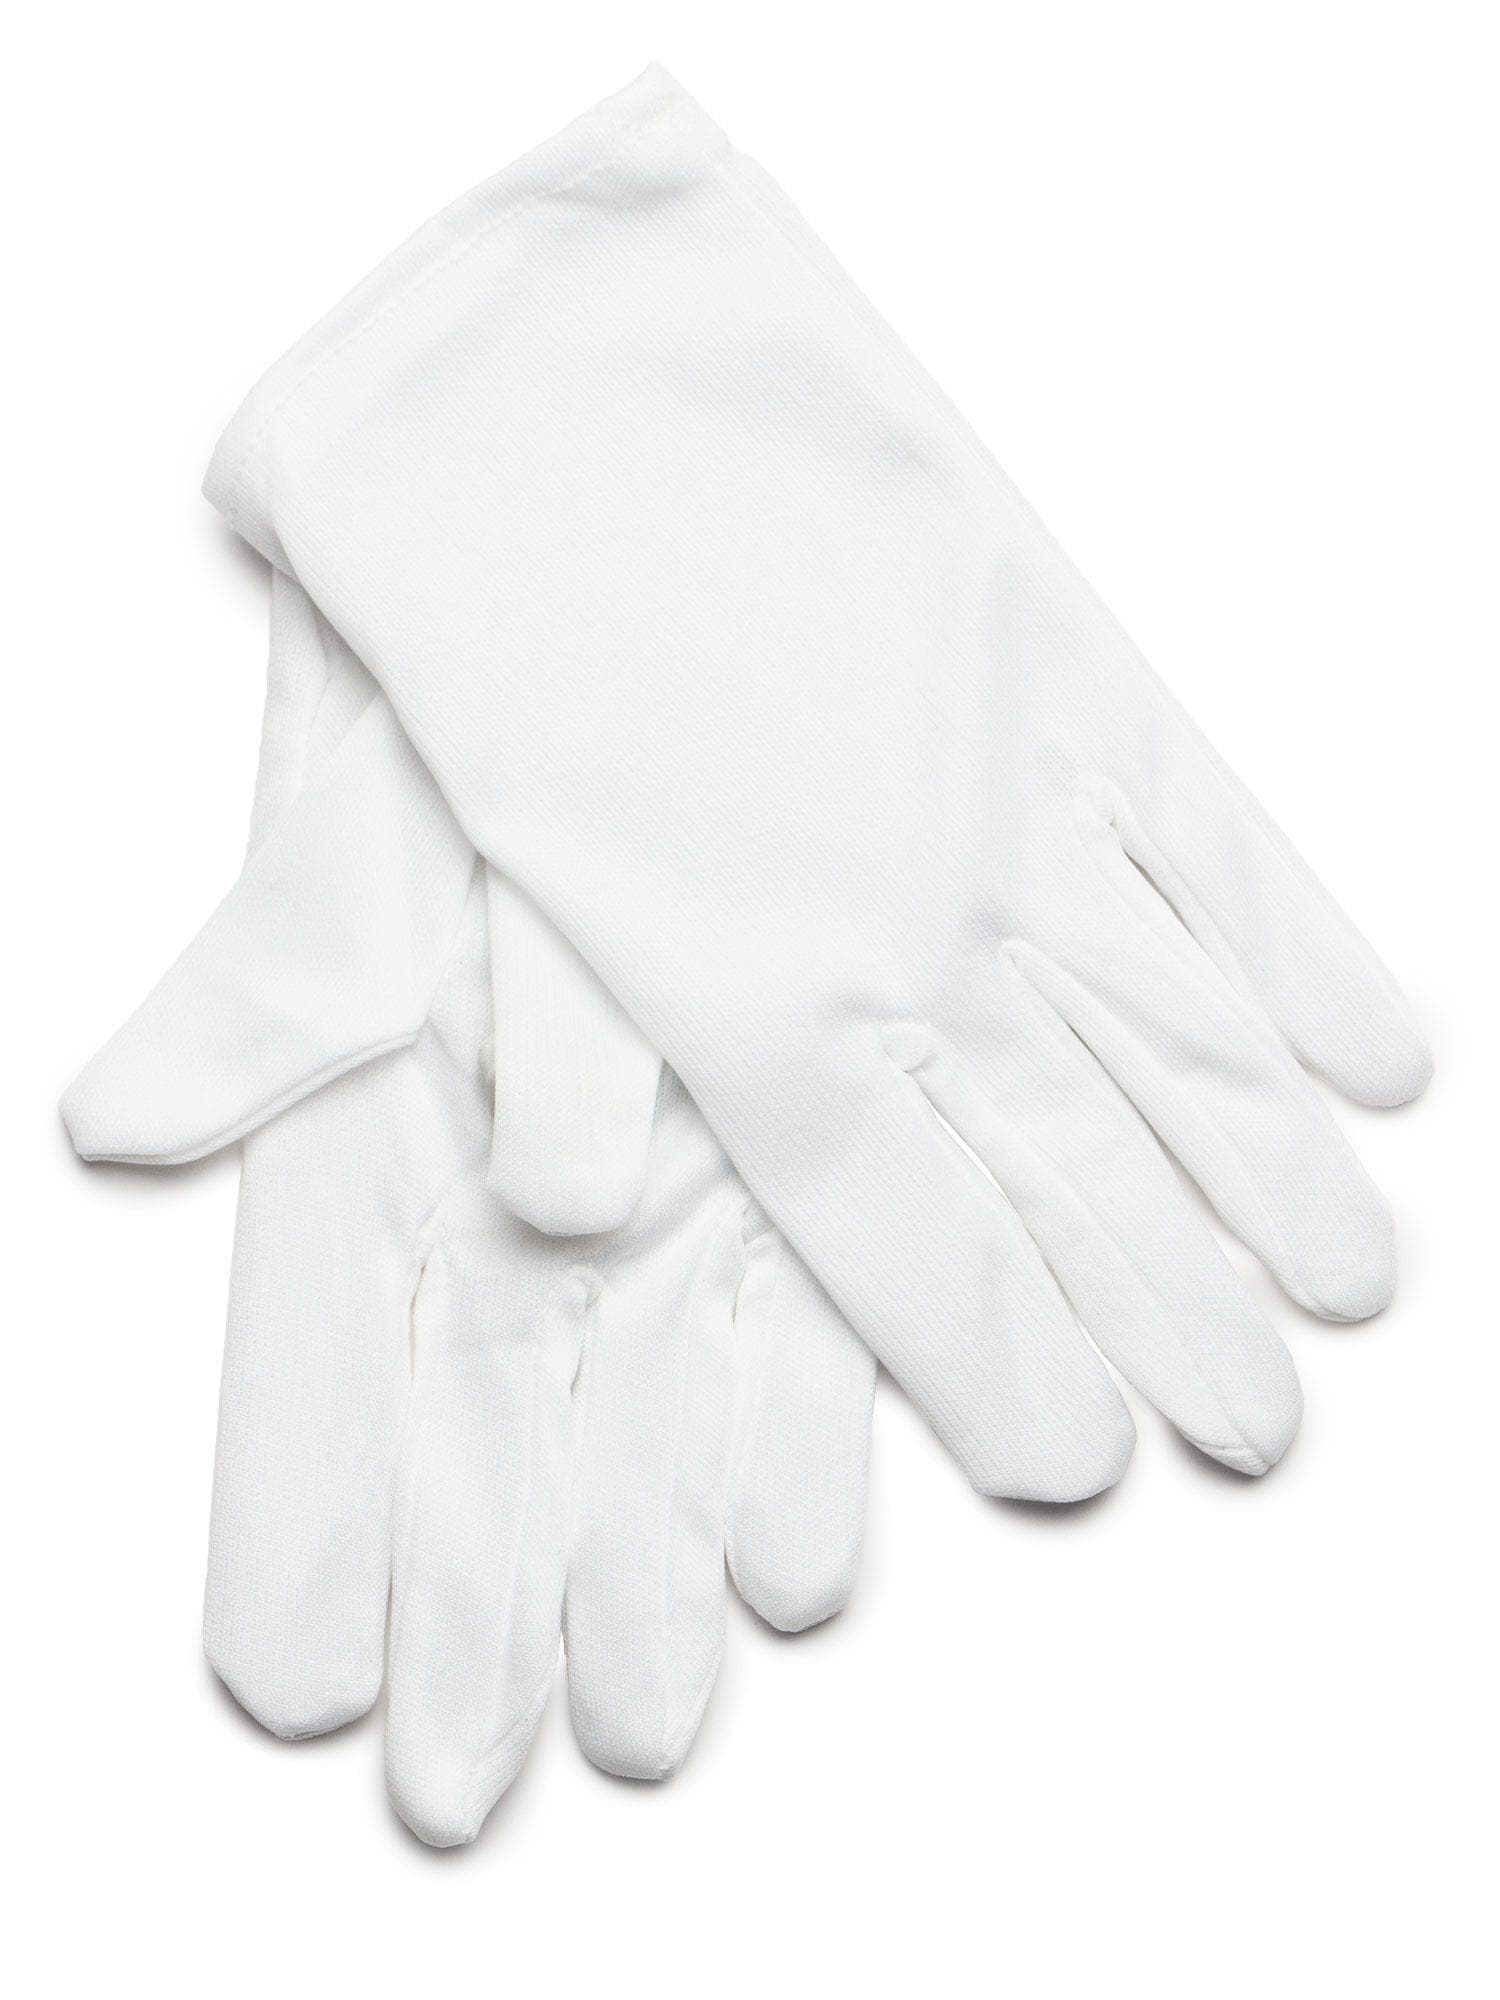 White Gloves Child - costumes.com